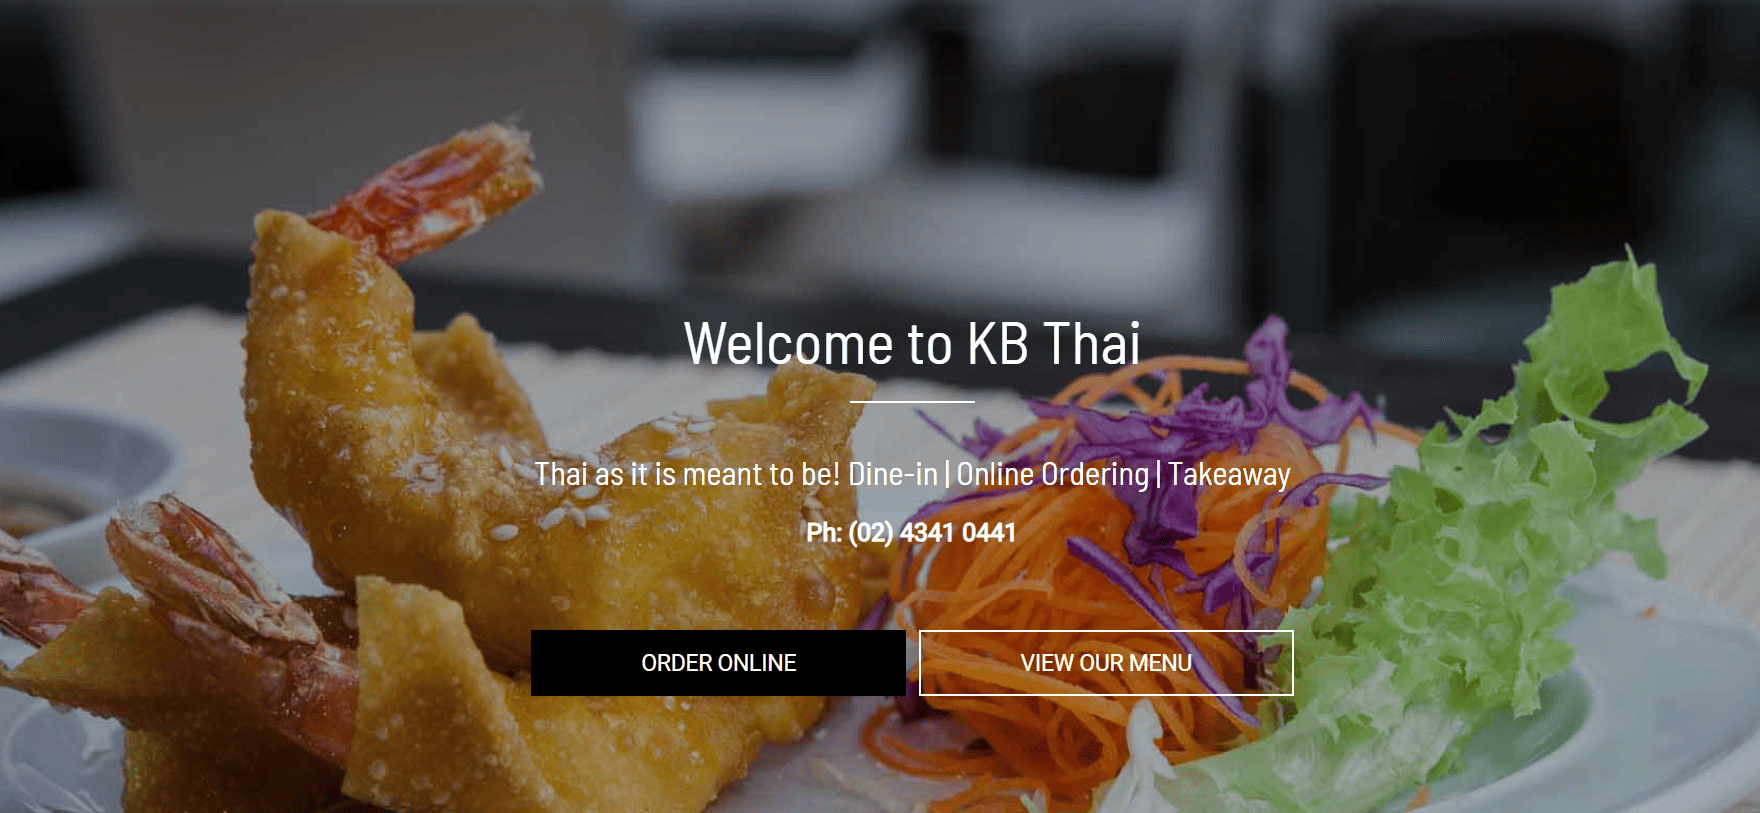 KB Thai website for seamless online ordering